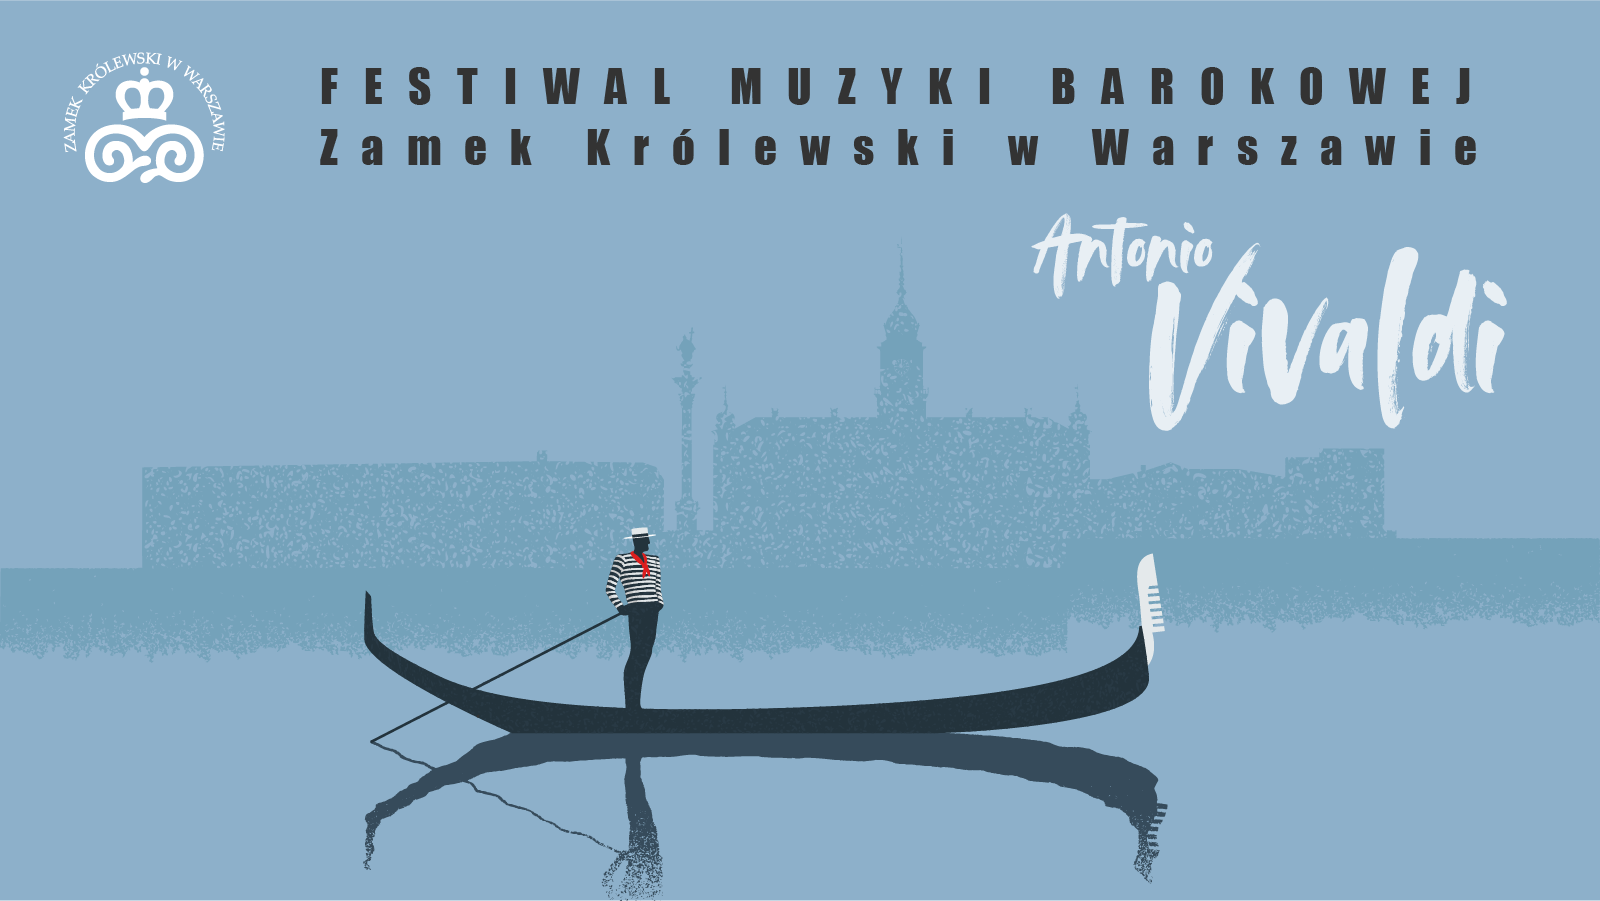 Festiwal Muzyki Barokowej. "Antonio Vivaldi"